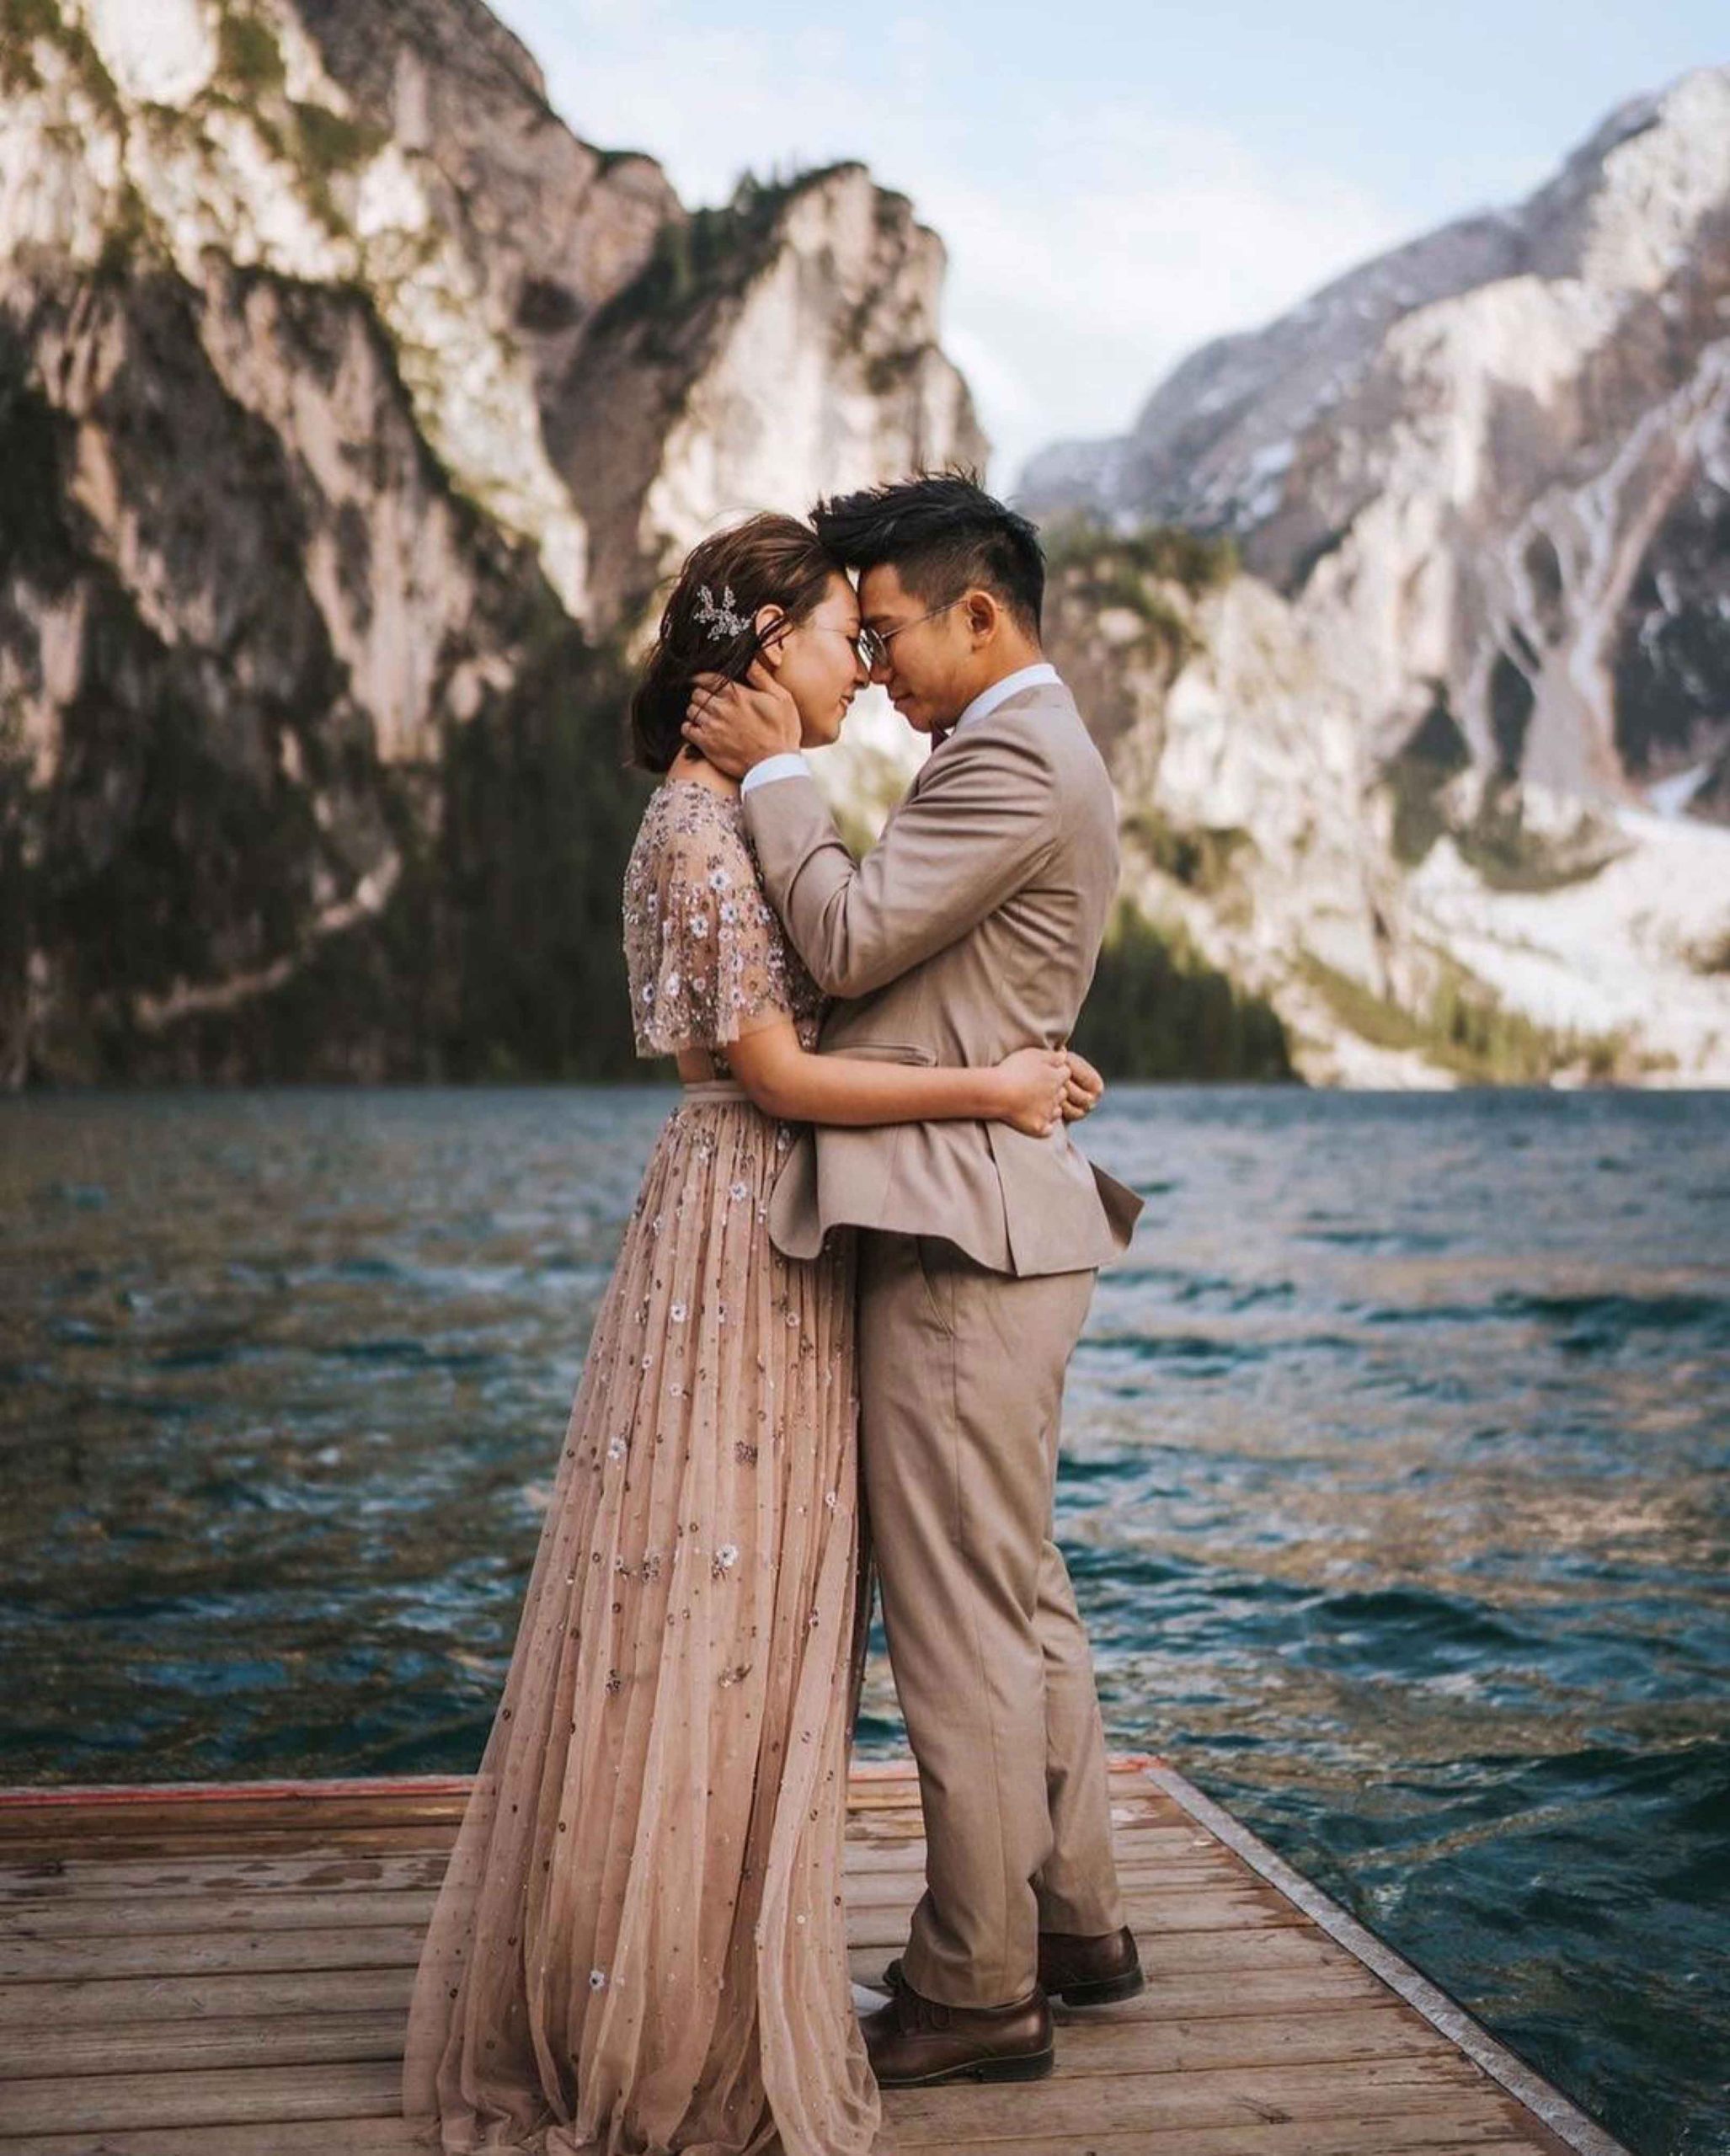 Hochzeit, Hochzeitspaar, Hochzeitsfeier, Lago di braies, Südtirol, Pragser Wildsee